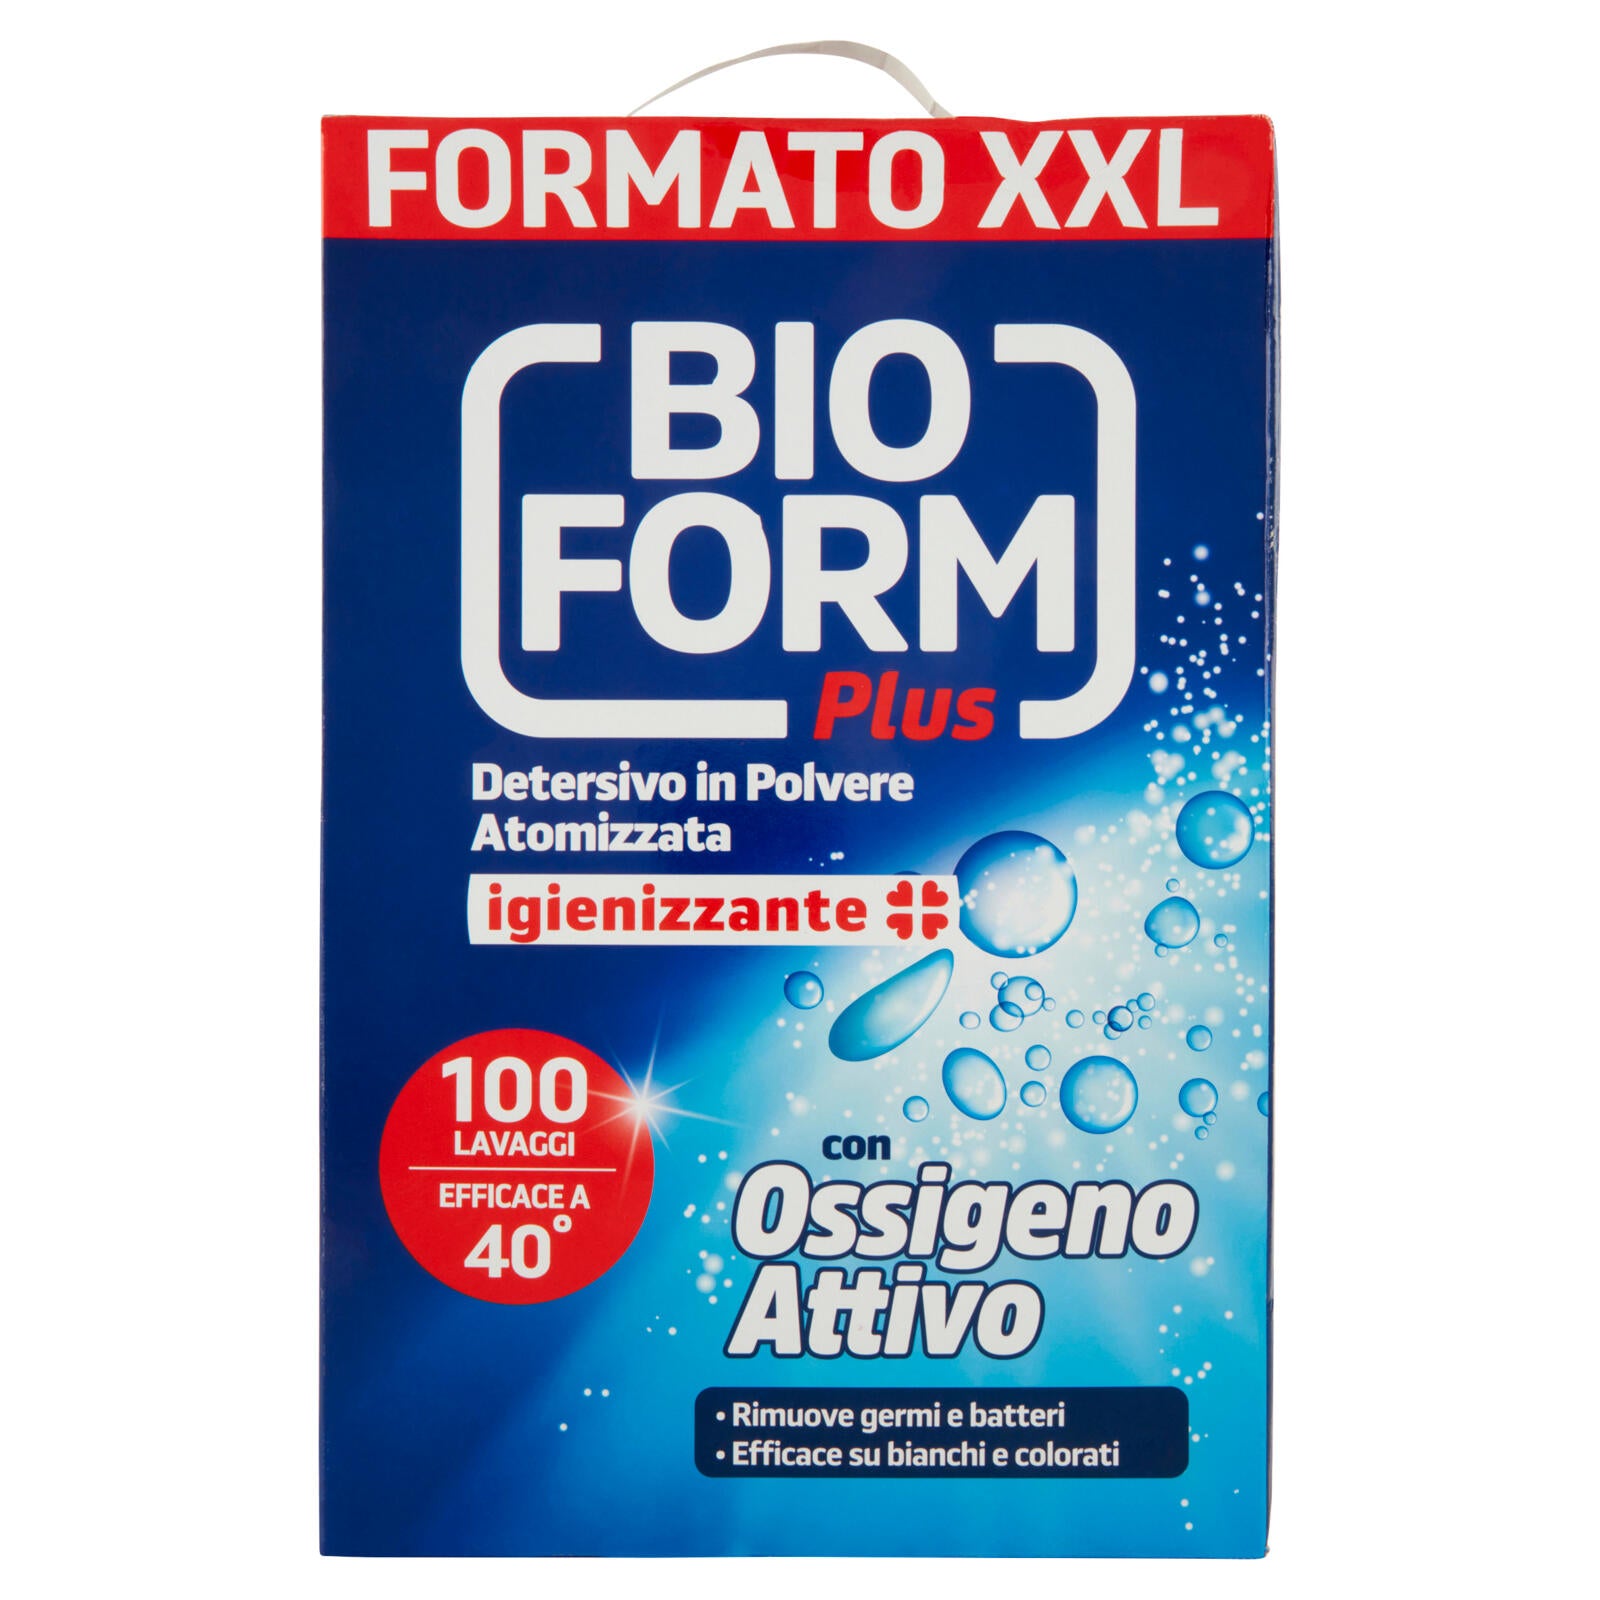 Bioform Plus Detersivo in Polvere Atomizzata igienizzante 5,500 kg ->